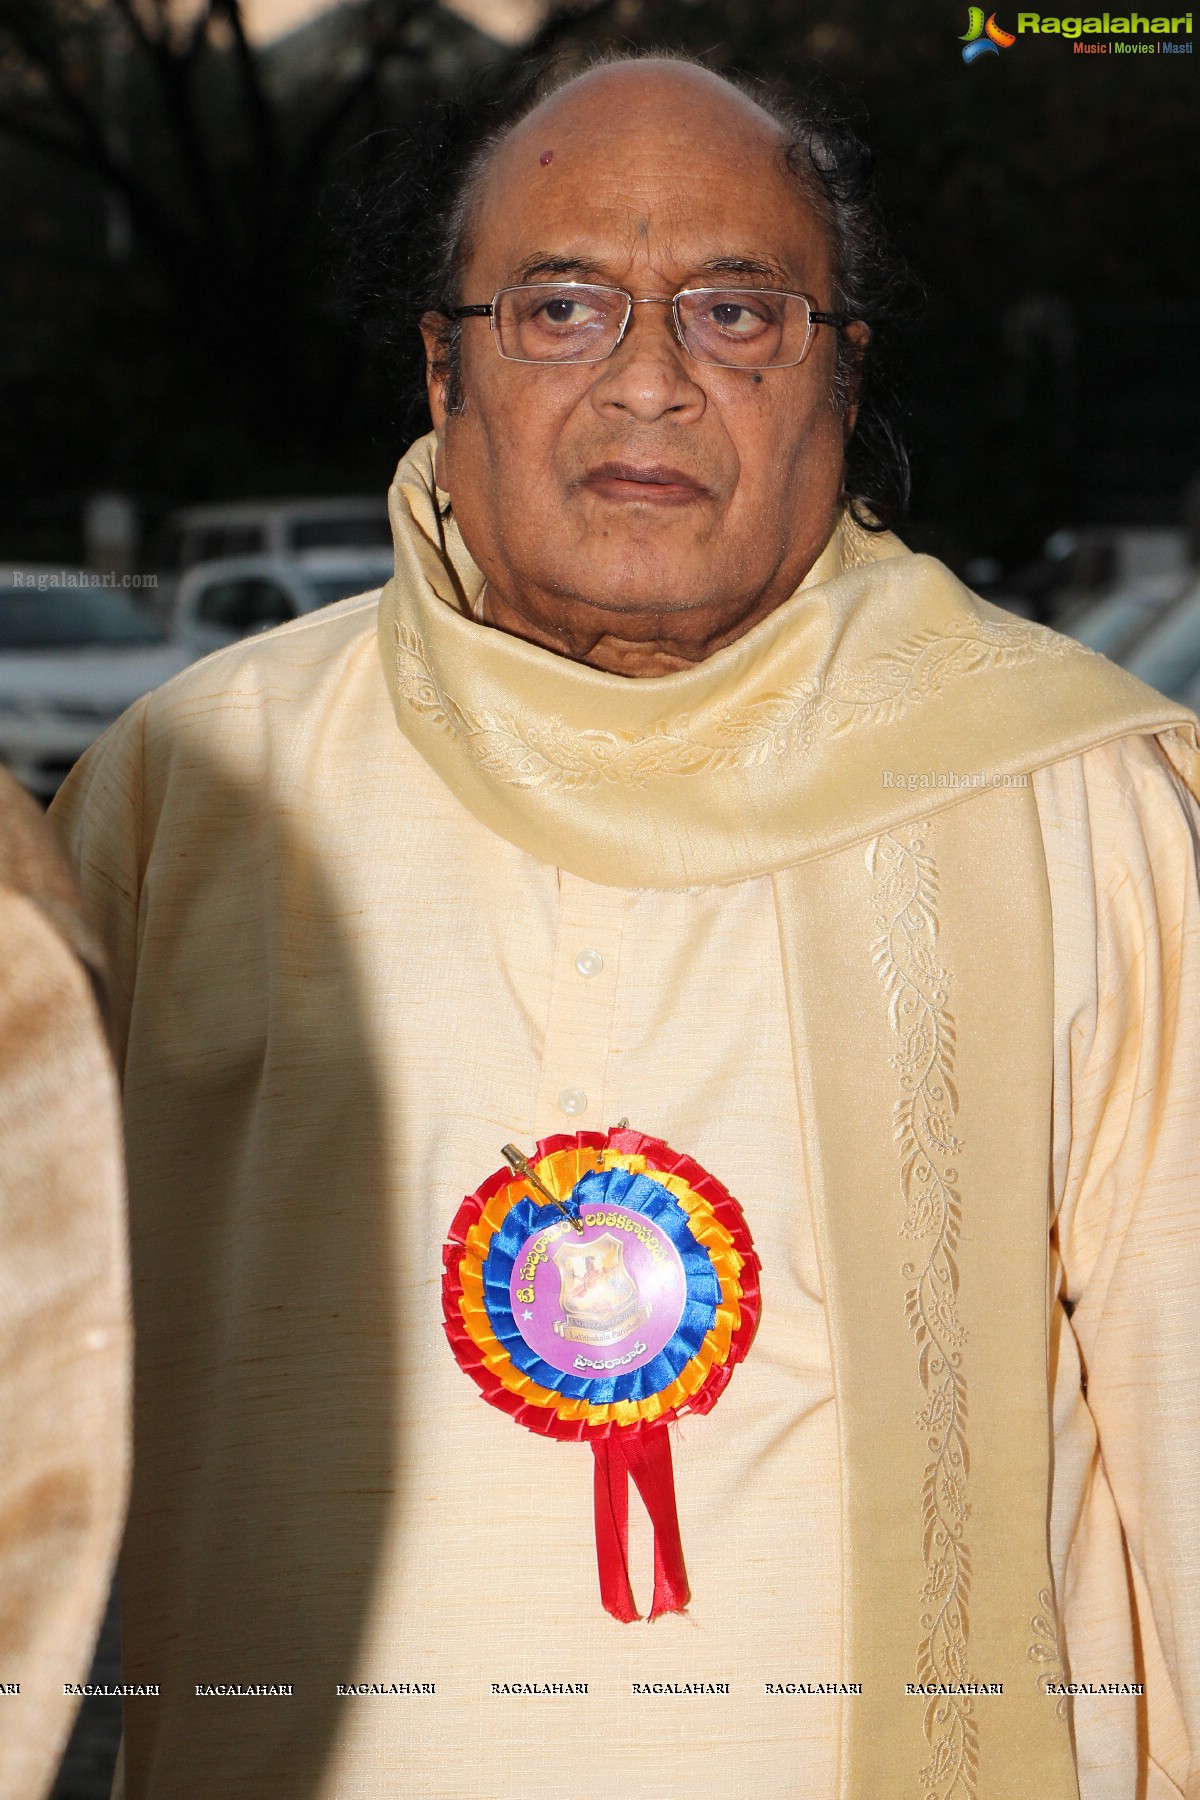 Rasamayi Lalitha Sangeetha Puraskarala Pradanotsavam by TSR Lalitha Kala Parishath